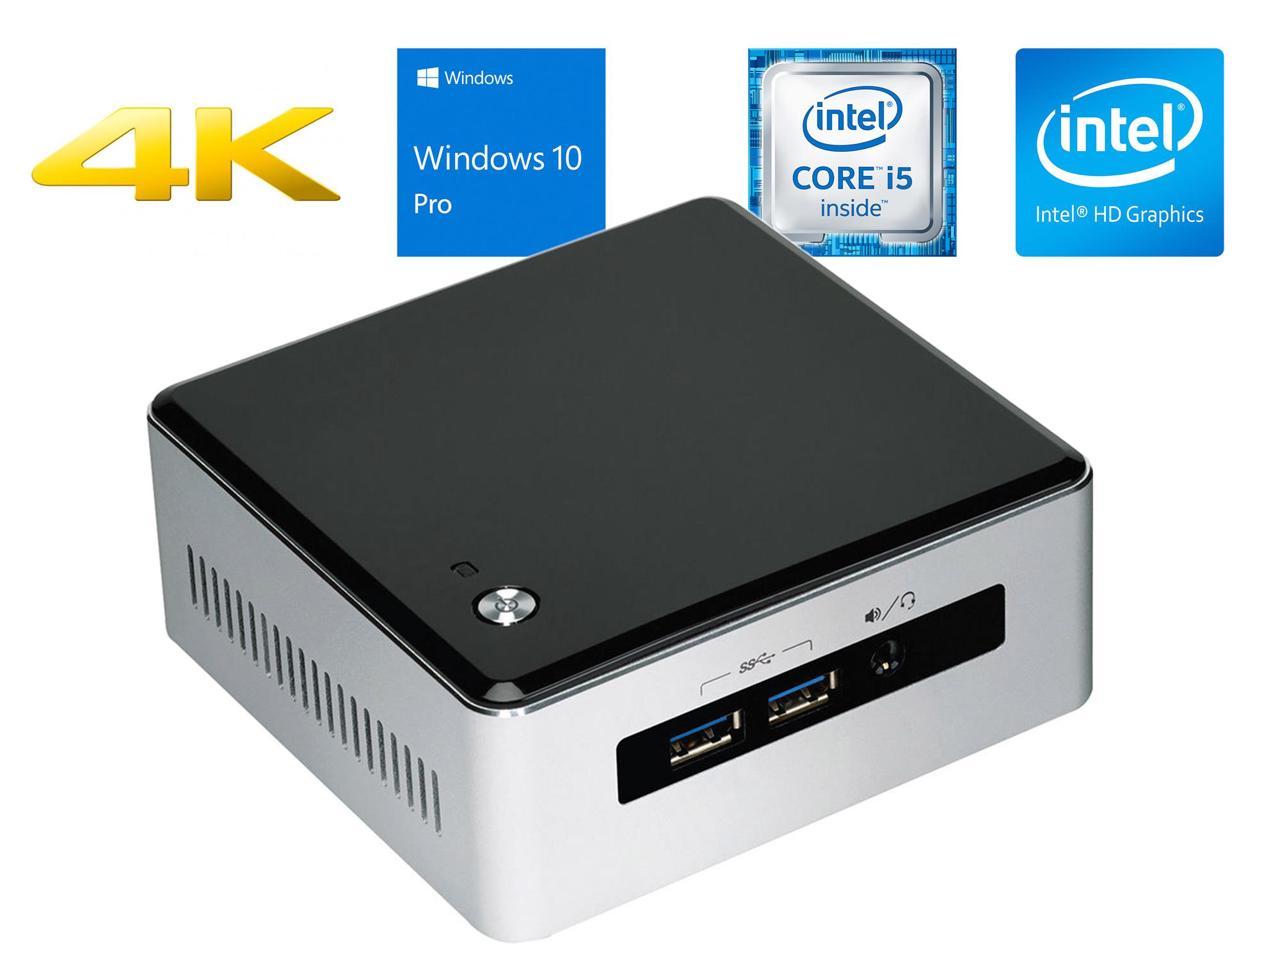 Intel NUC5i5RYH Mini Desktop, Intel Dual-Core i5-5250U Upto 2.7GHz, 8GB RAM, 128GB SSD, MiniDP, MiniHDMI, Wi-Fi, Bluetooth, Windows 10 Pro